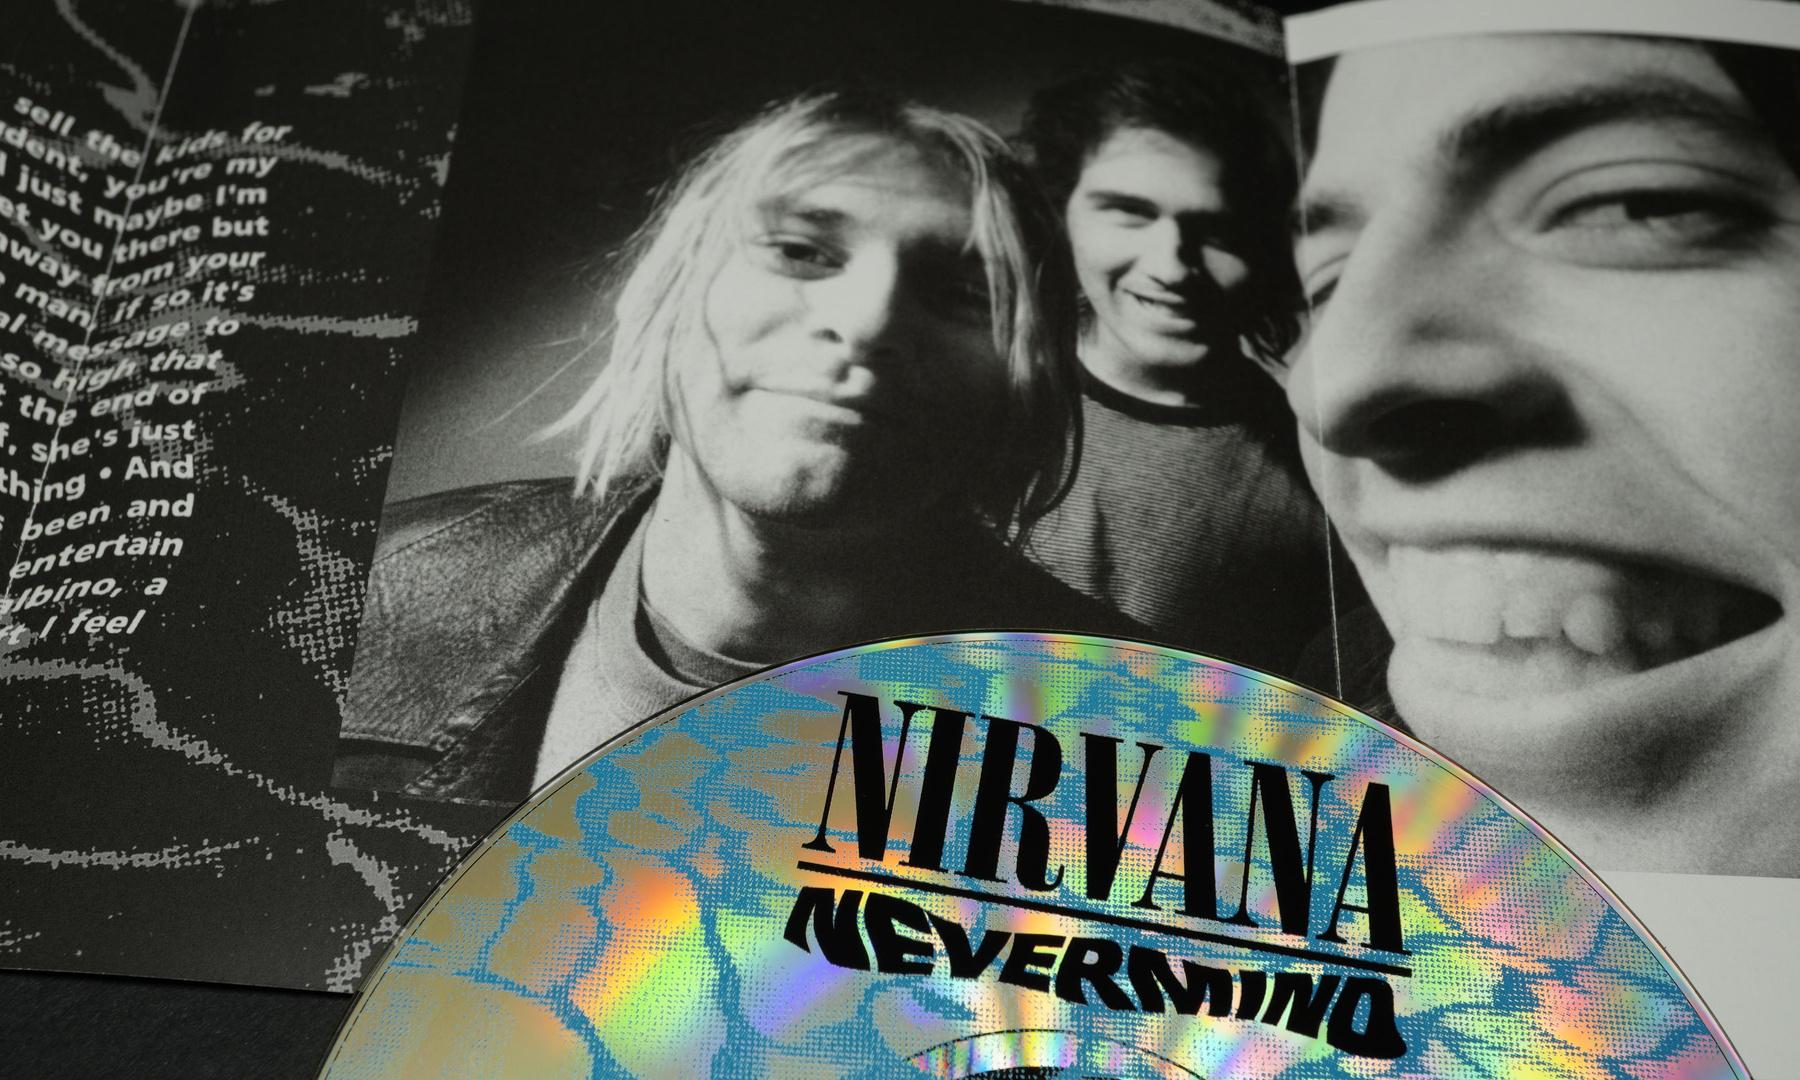 Зумеры оказались фанатами группы Nirvana: почему они боготворят Курта Кобейна?